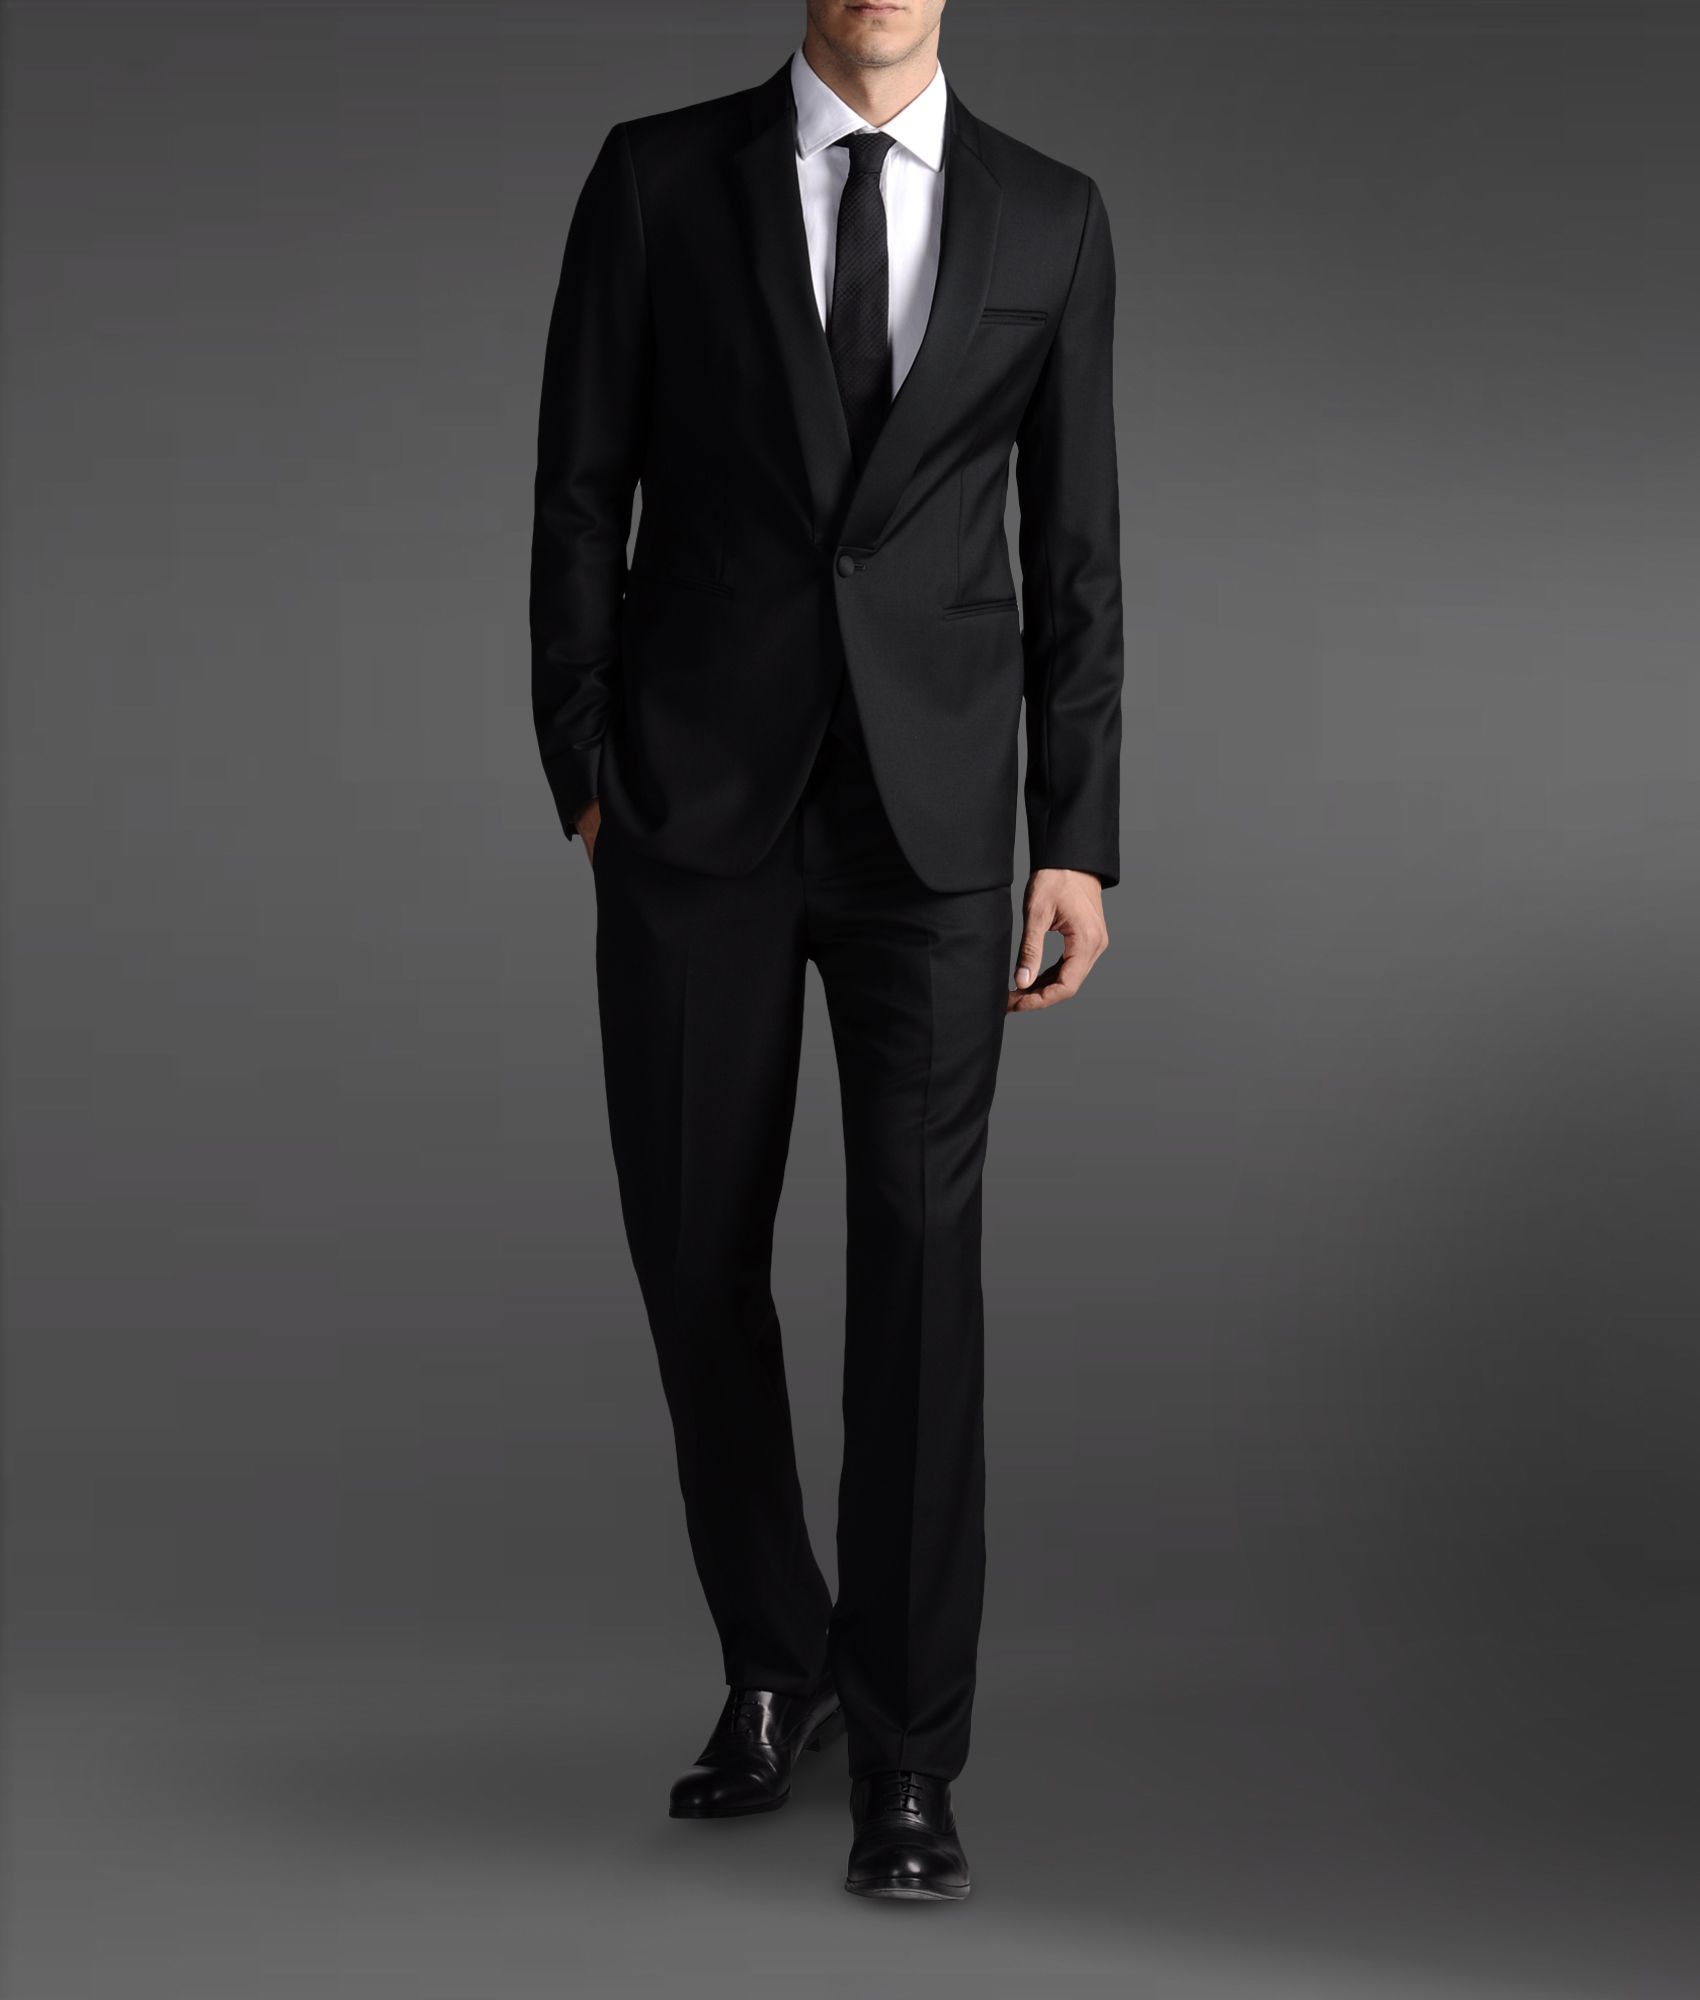 armani 2 piece suit